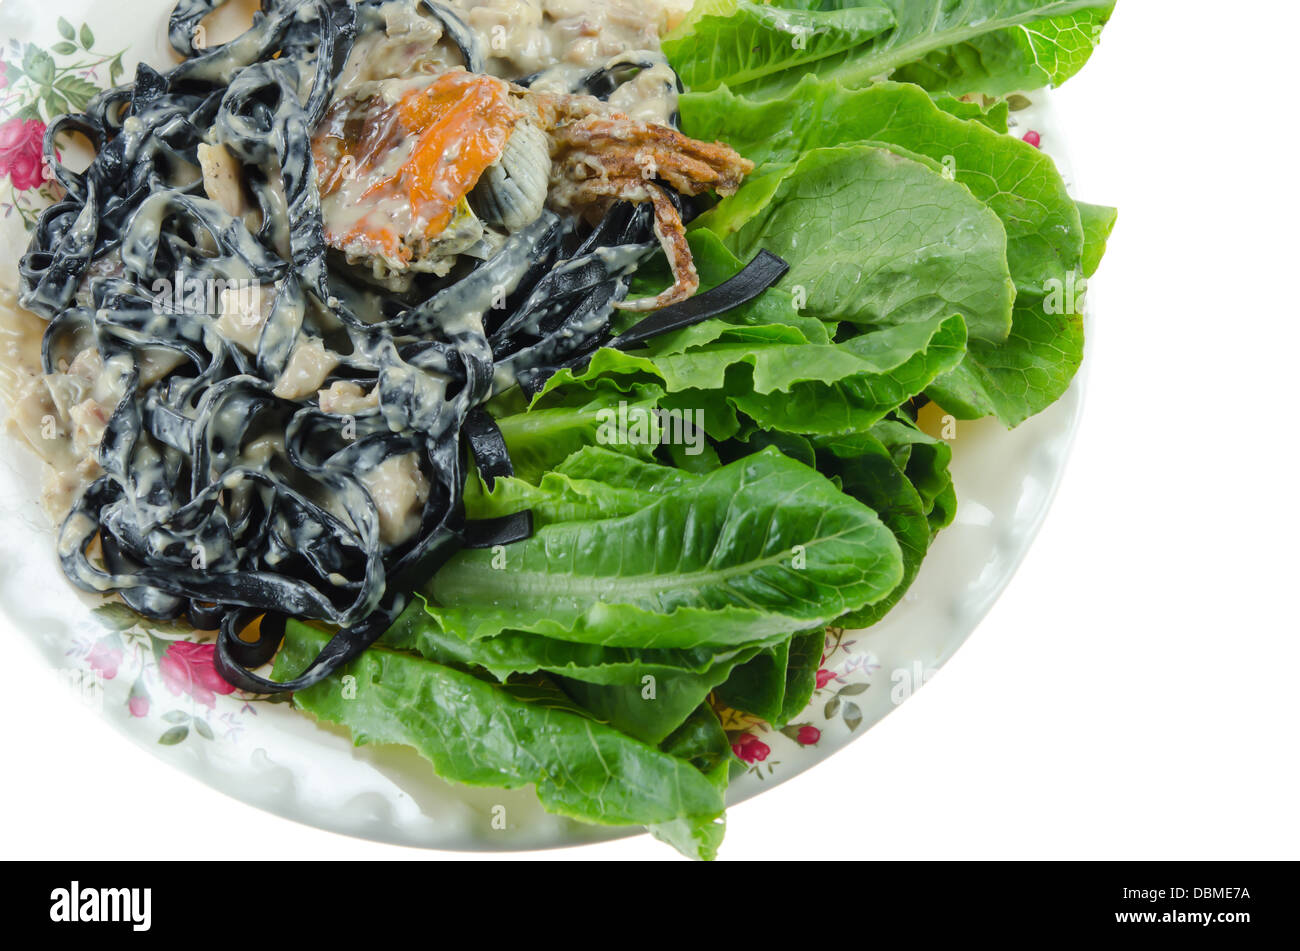 Vista dall'alto di tagliatelle nere (pasta fatta con nero di seppia) con sugo alla carbonara , granchi fritti e verdura fresca sul piatto Foto Stock